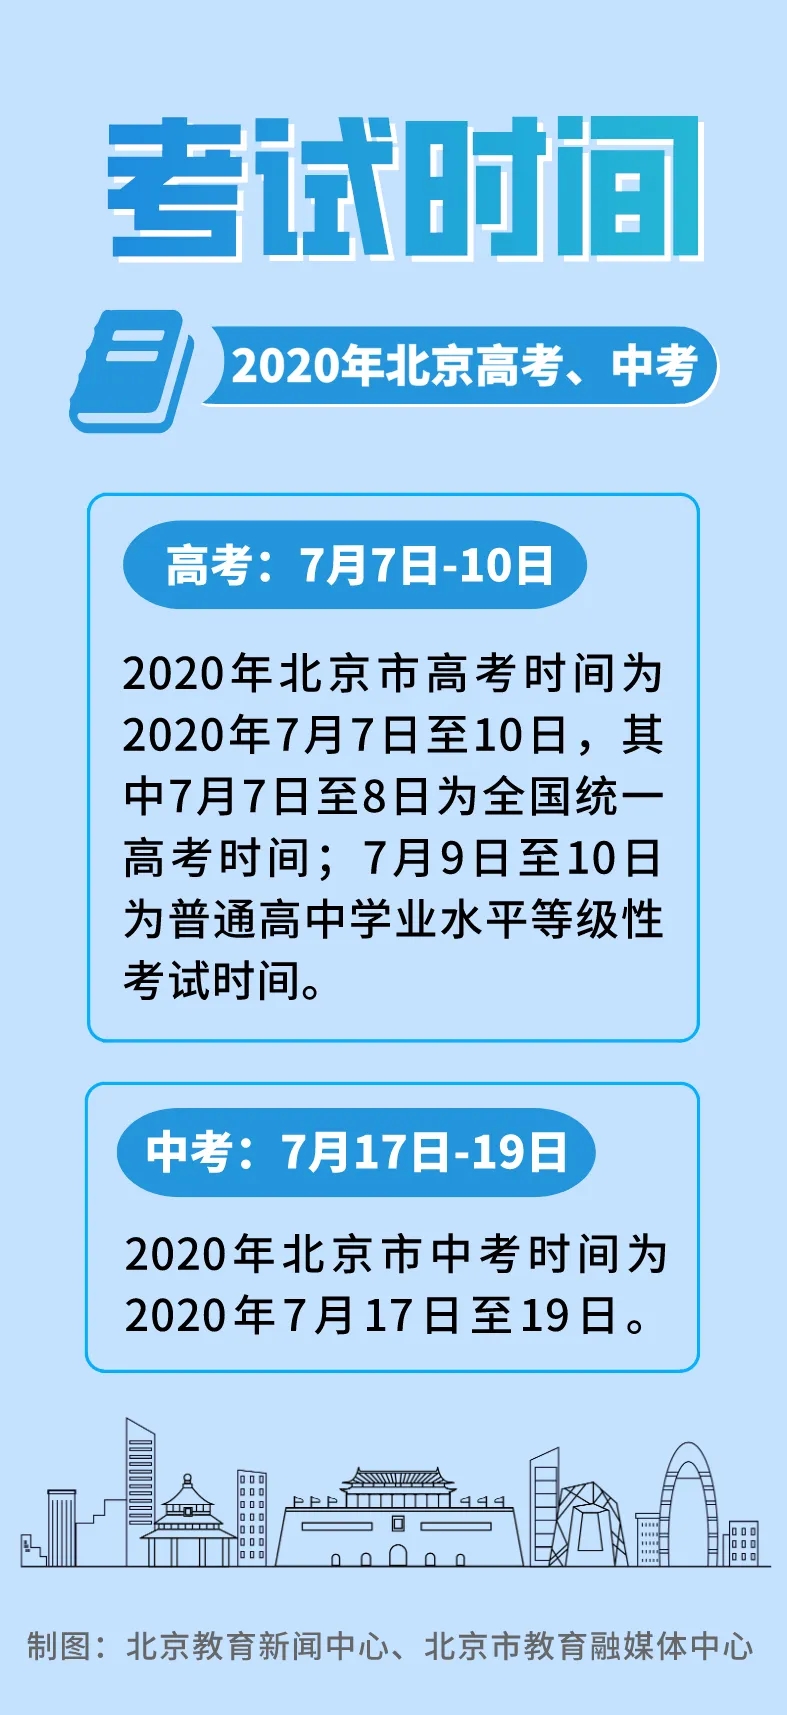 北京高三年级4月27日开始返校学习7月7日至10日高考